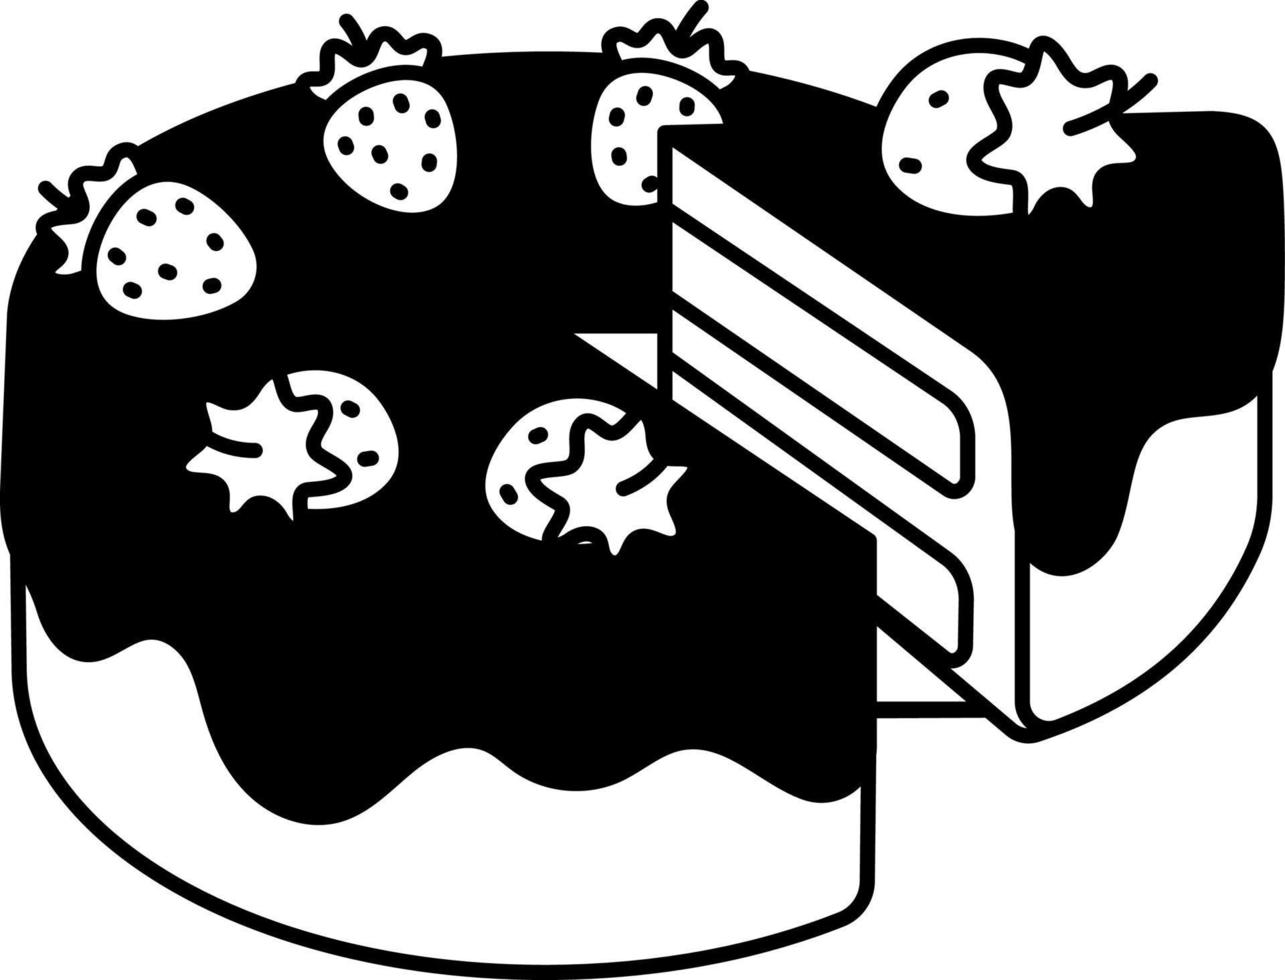 vanille aardbei taart is wezen verdeeld toetje icoon element illustratie halfvast zwart en wit vector